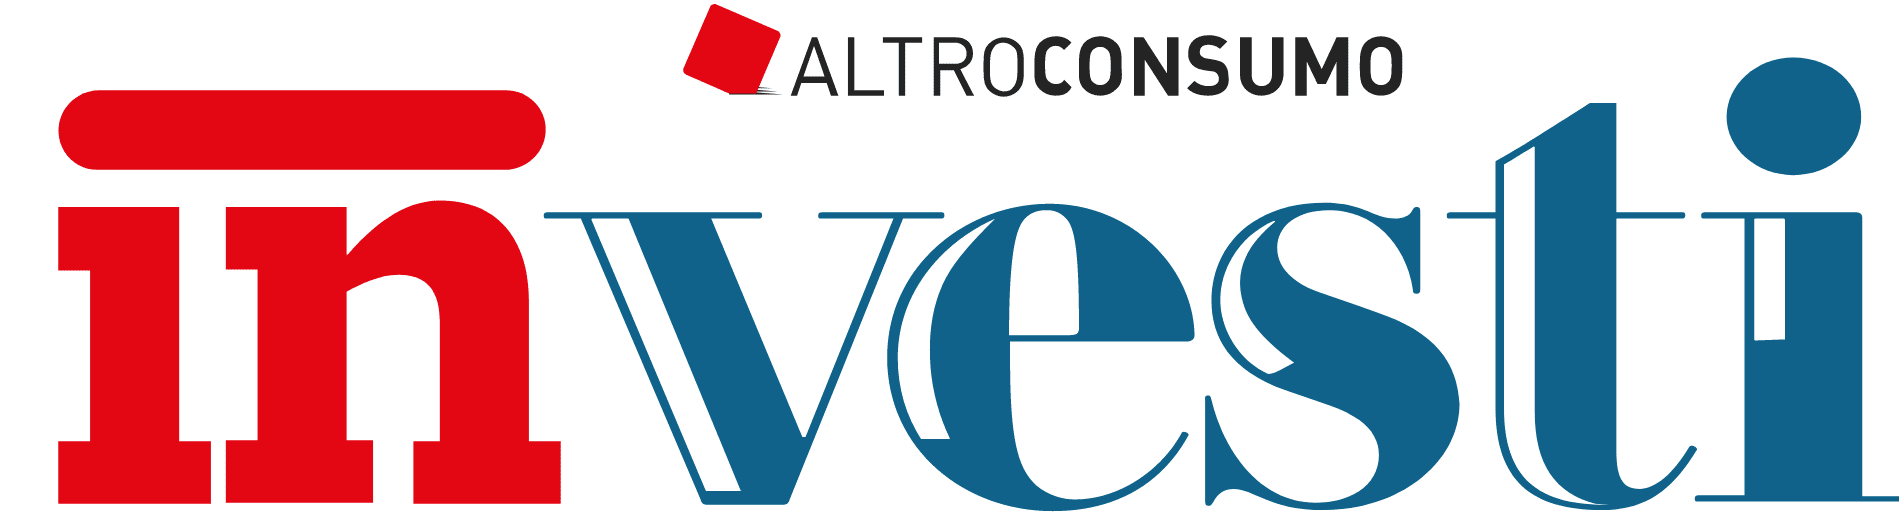 Altroconsumo Investi Logo